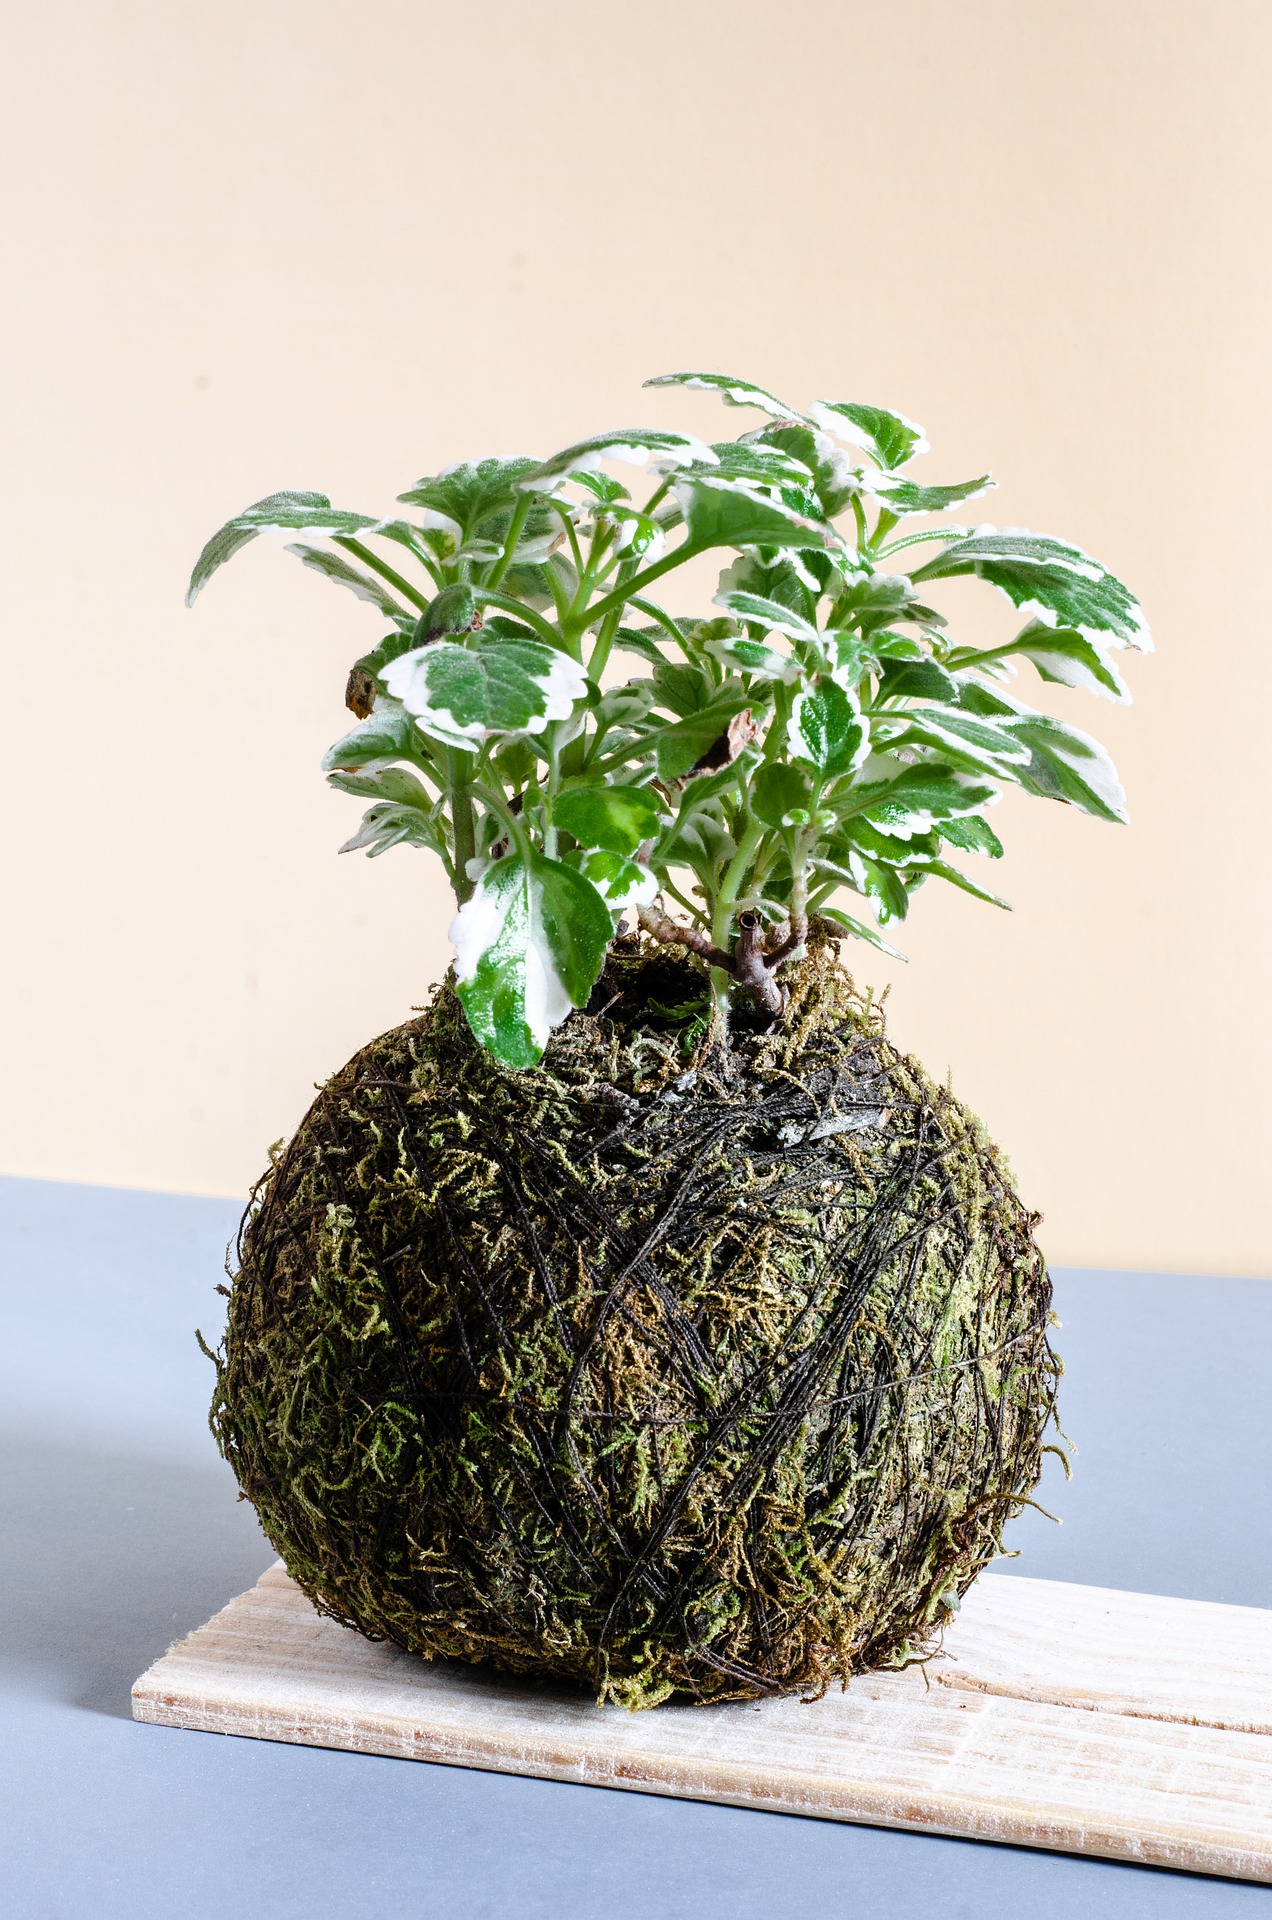 अरालिया का पौधा – Aralia Plant in Hindi